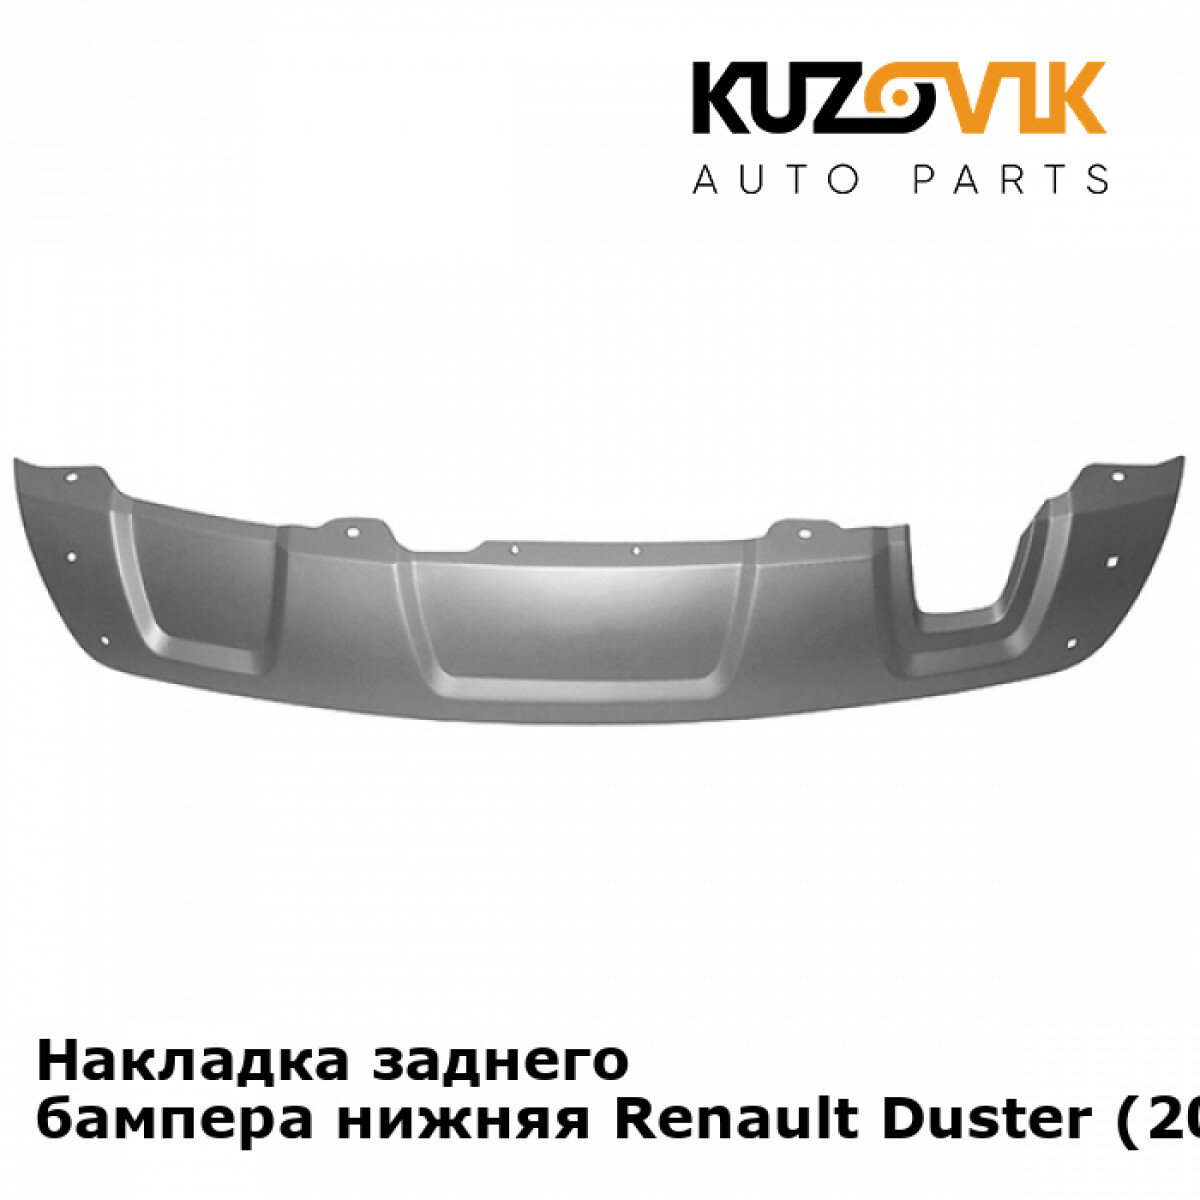 Губа юбка накладка переднего бампера Renault Duster Рено Дастер (2010-2016) серебристый защита спойлер накладка